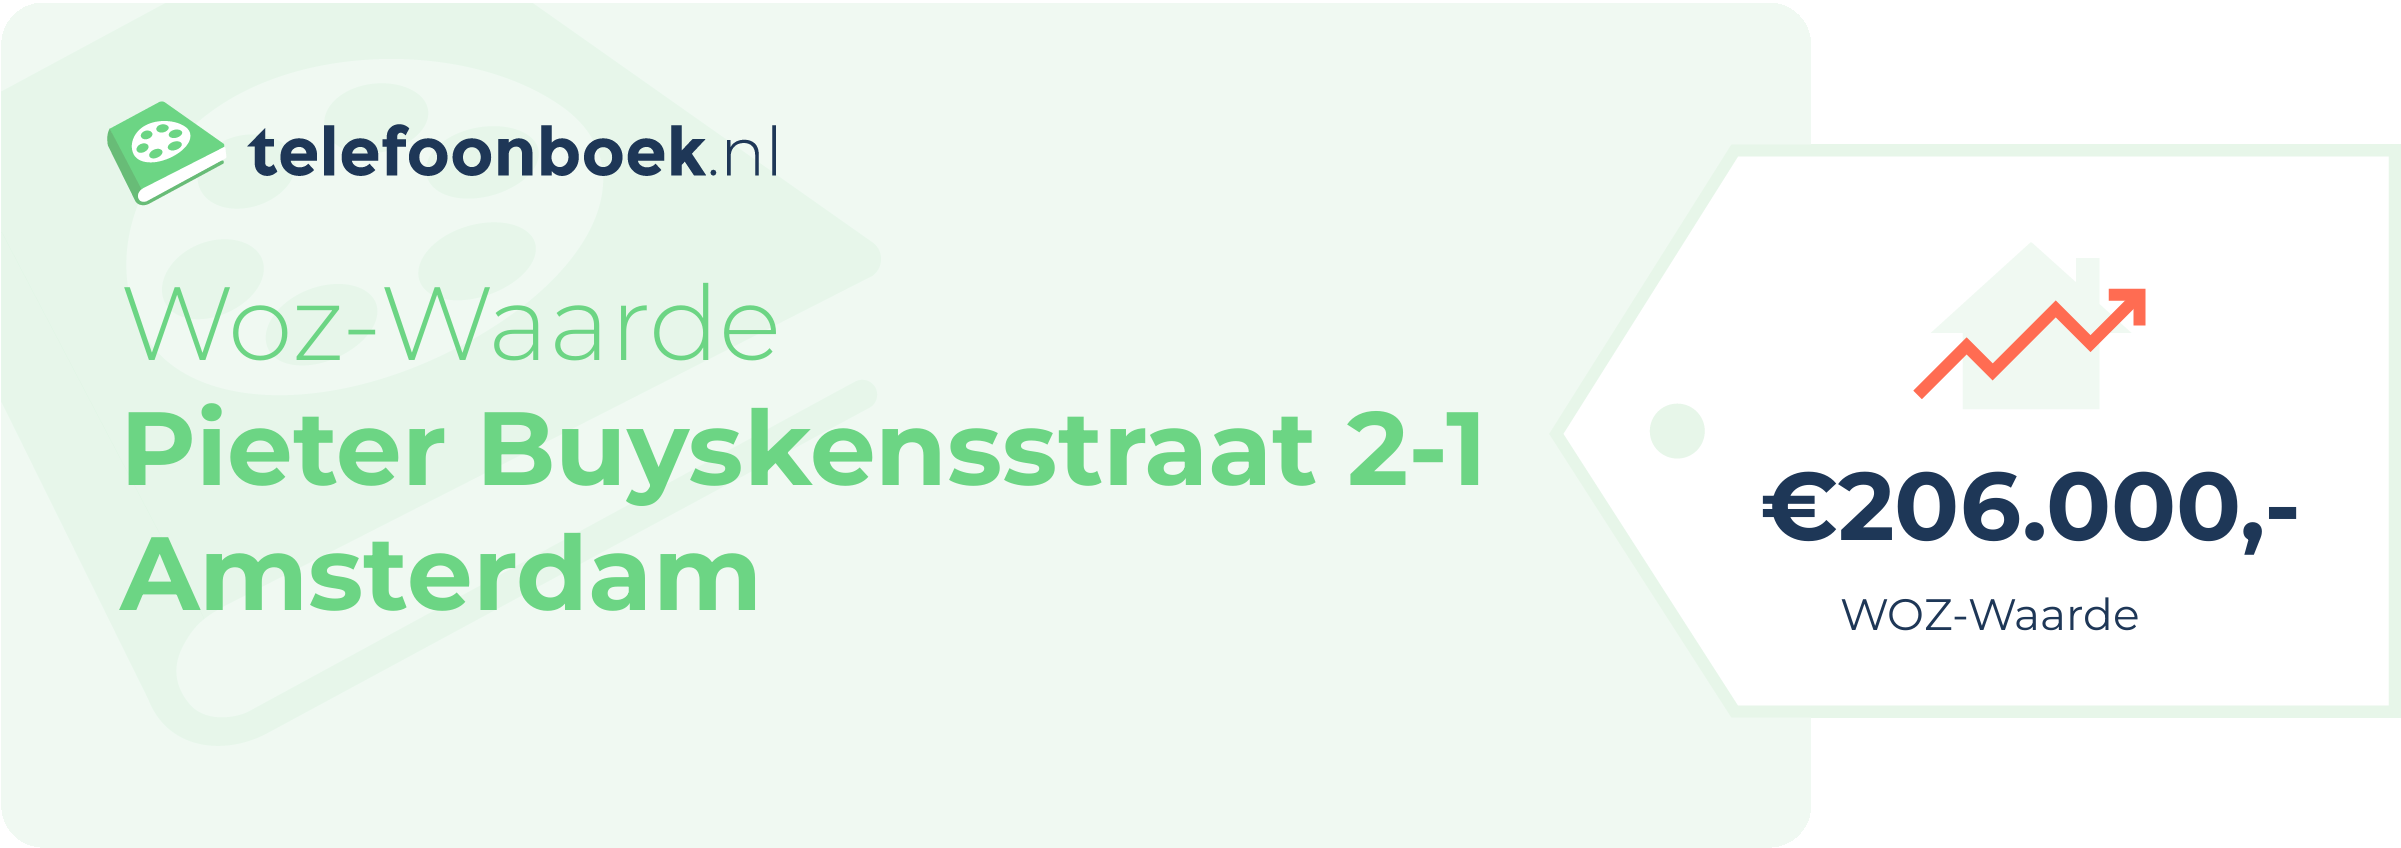 WOZ-waarde Pieter Buyskensstraat 2-1 Amsterdam